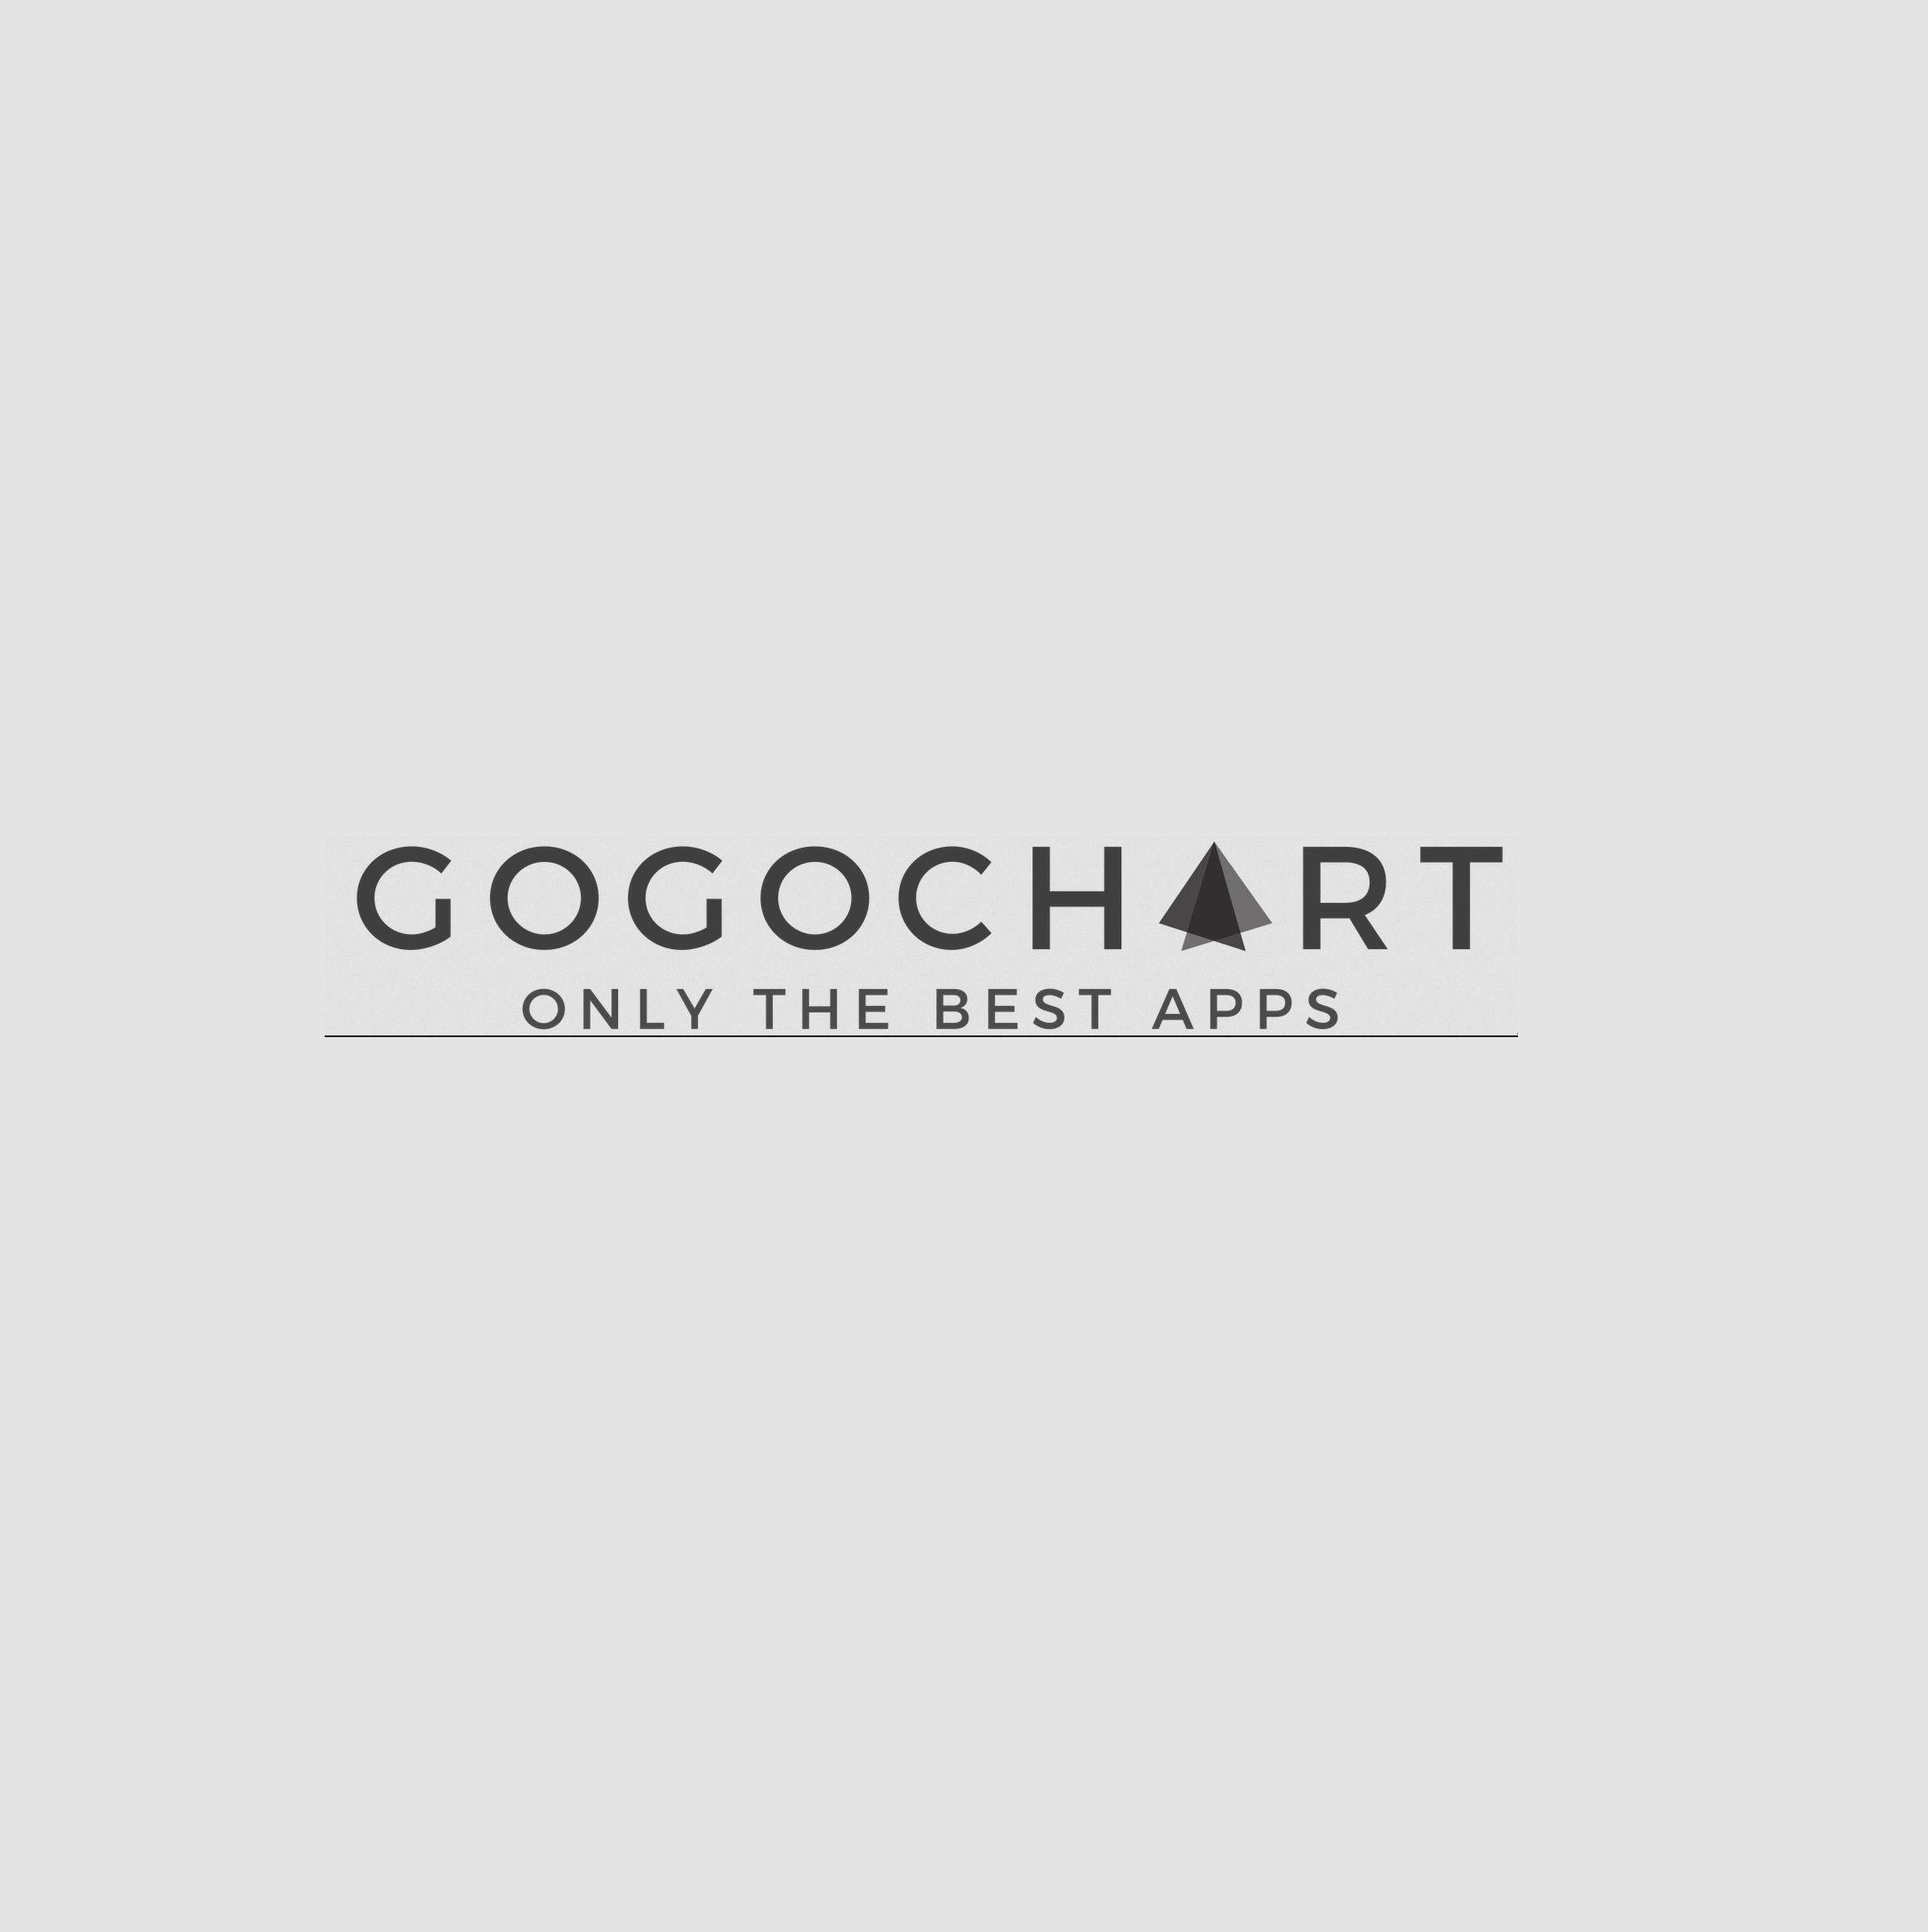 GoGoChart - The World’s Leading Mobile App Marketing Agency